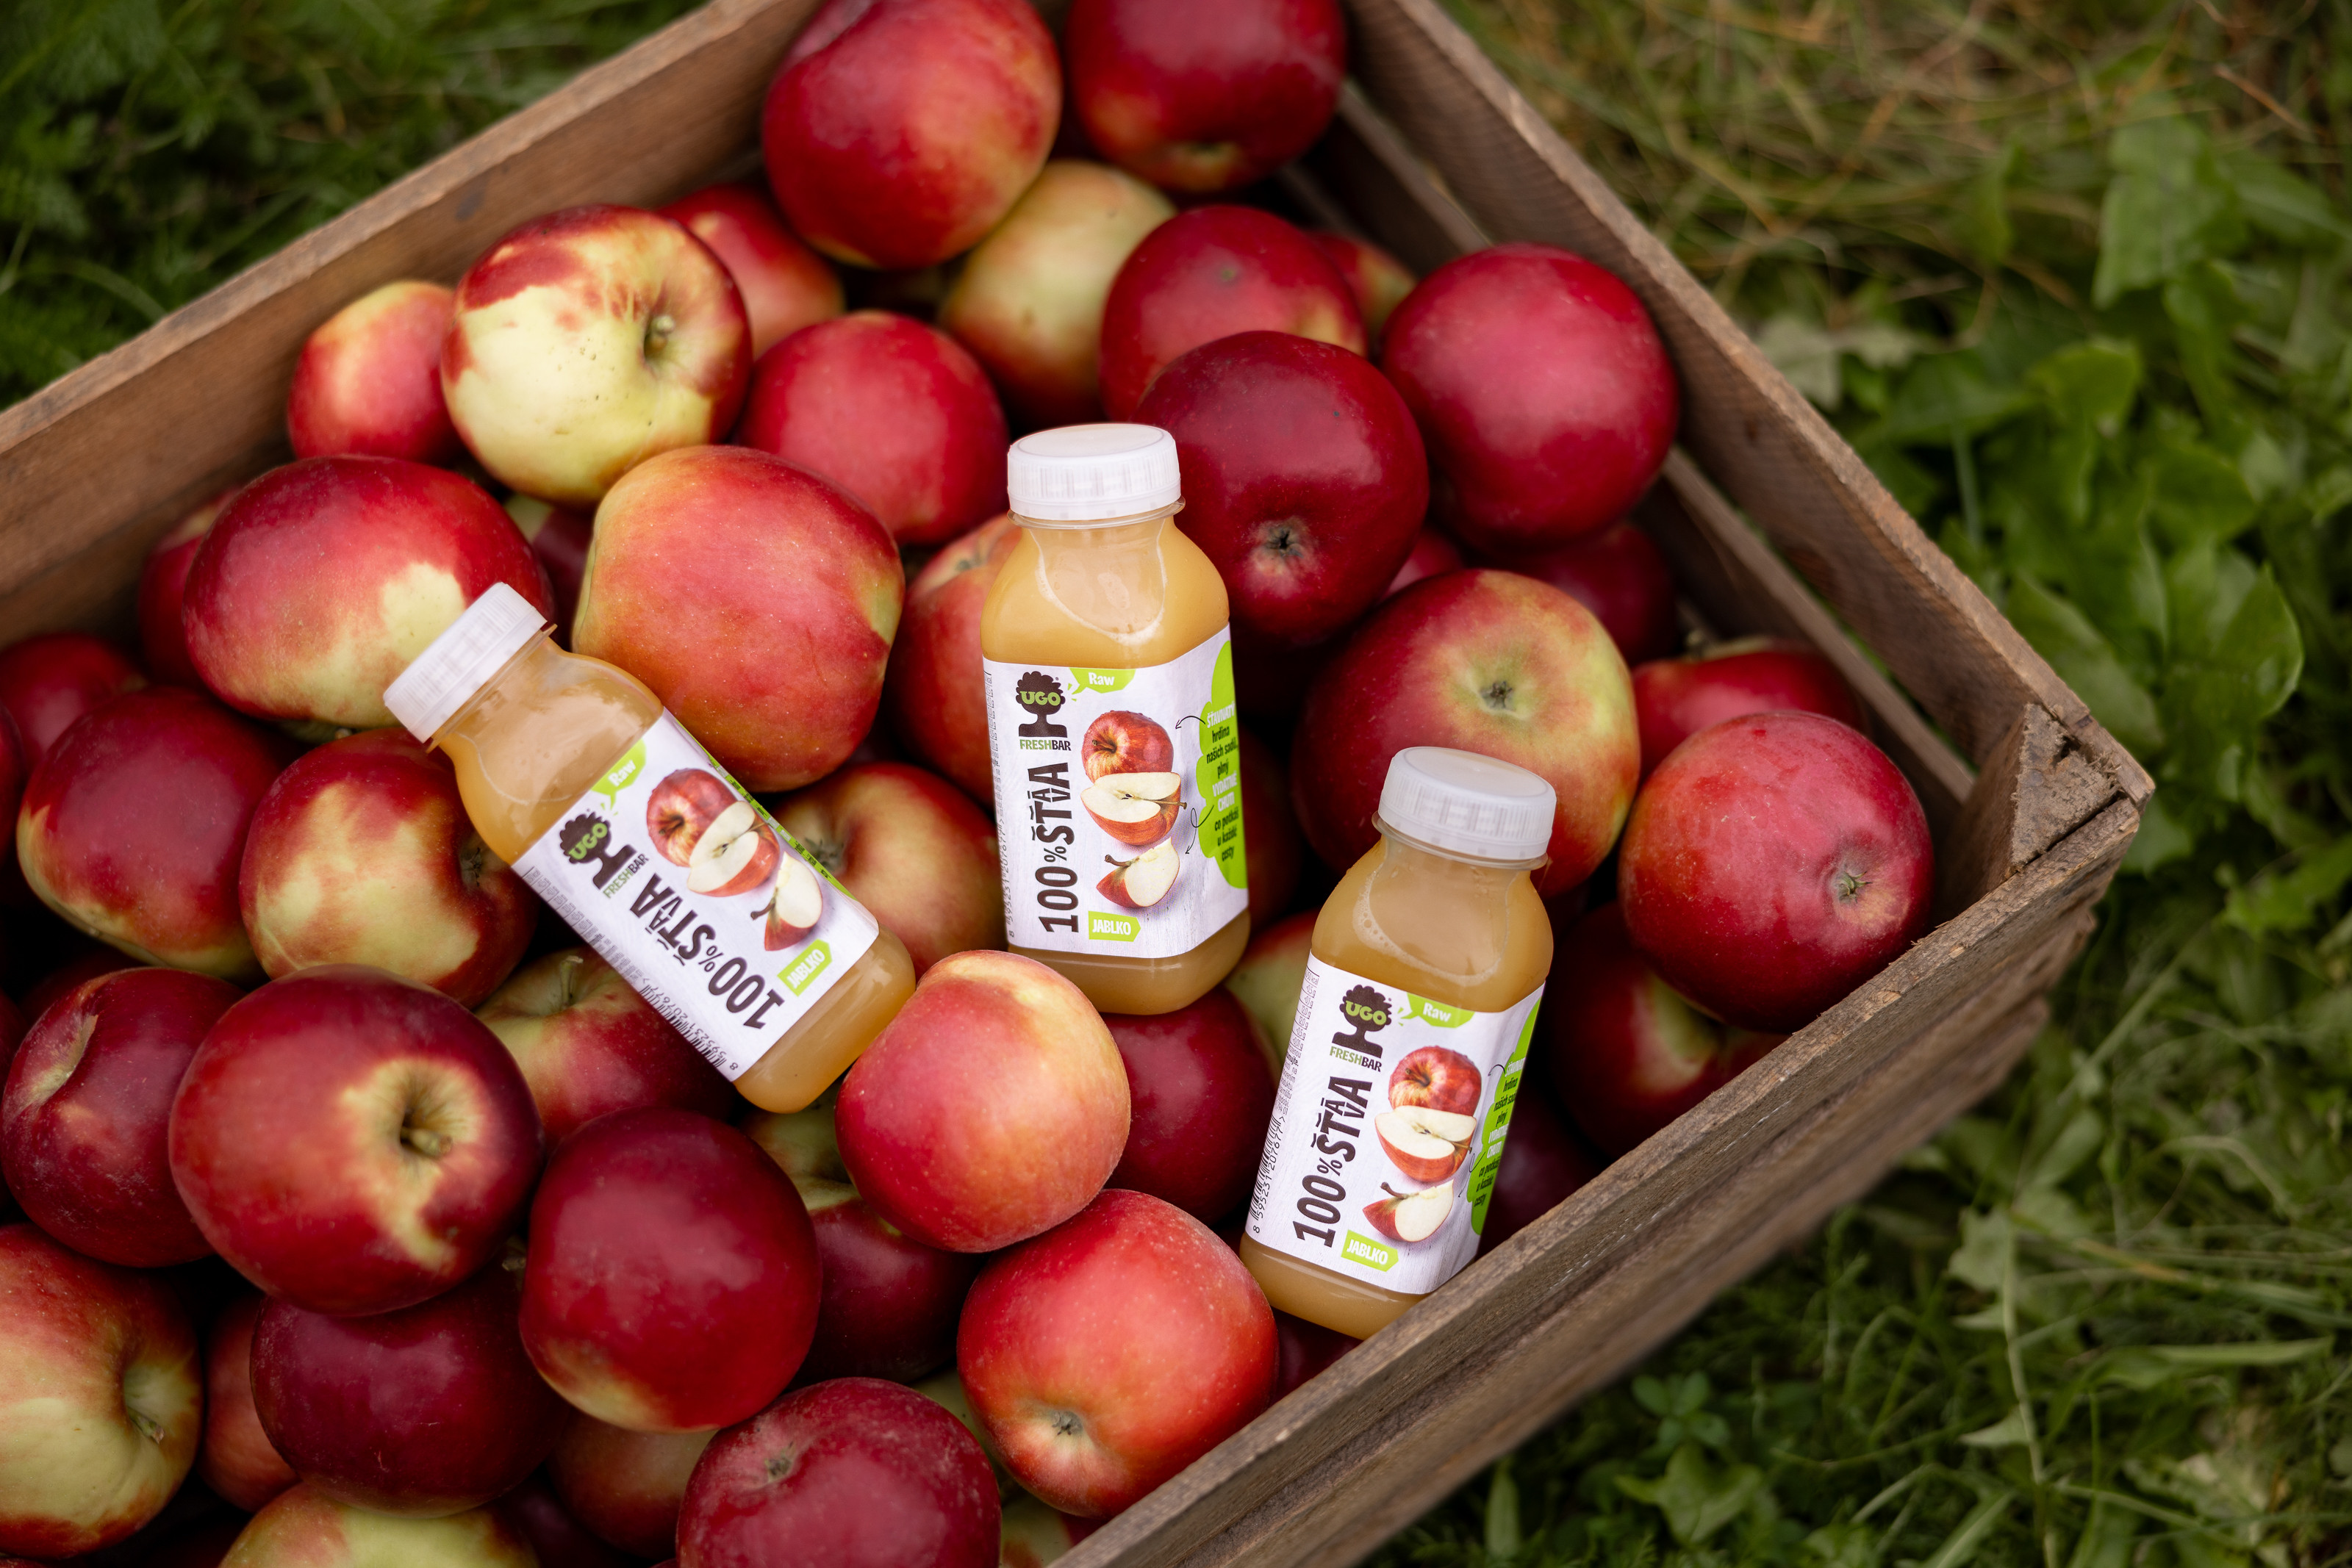 Kofola sa stane majiteľom jablčných sadov v Česku a spolumajiteľom kávových plantáží v Kolumbii